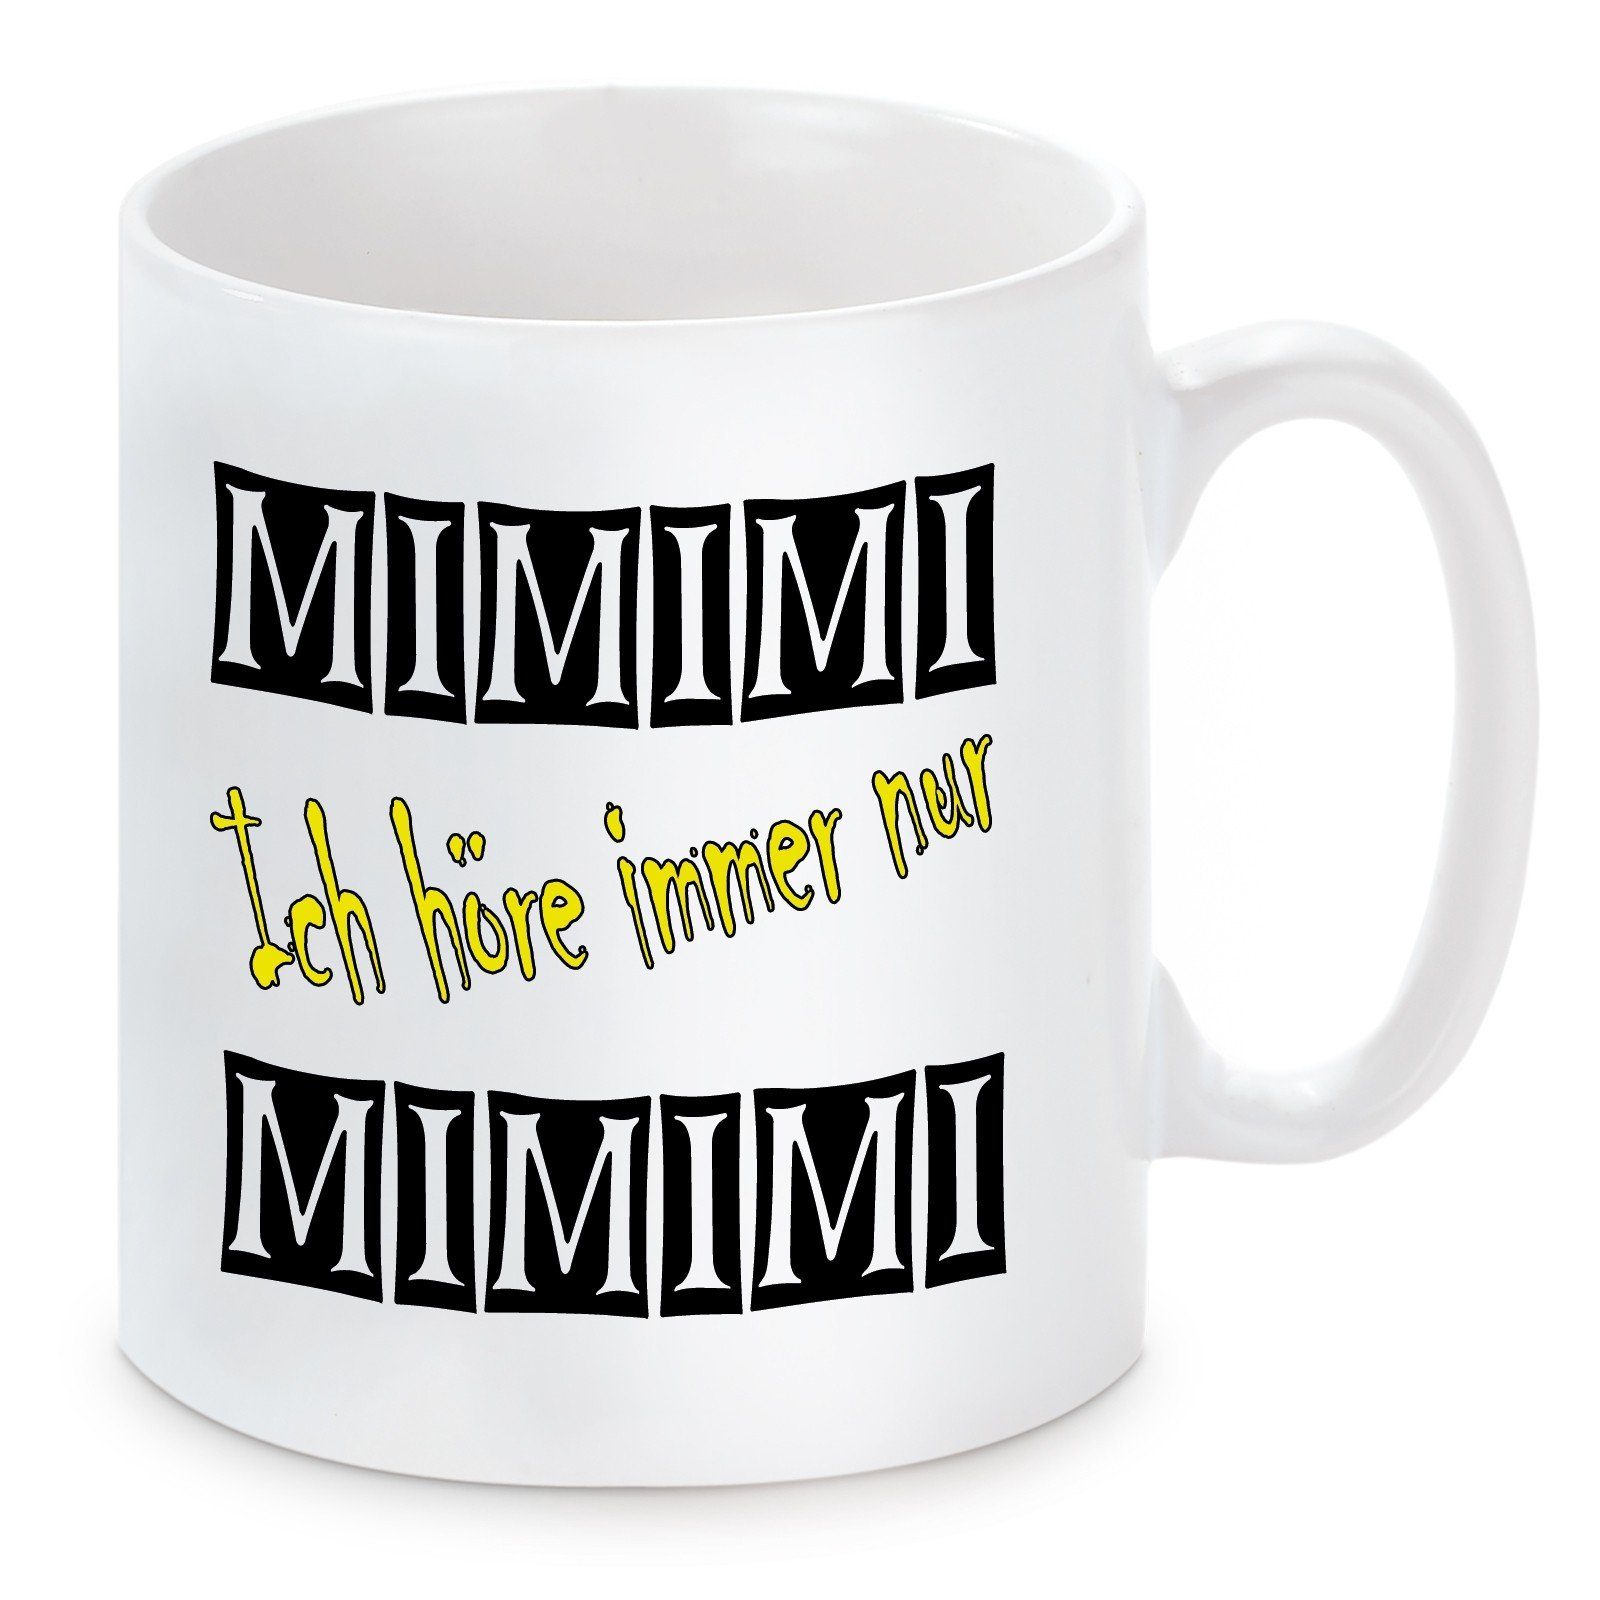 Herzbotschaft Tasse Kaffeebecher mit Motiv Mimimi ich höre immer nur Mimimi, Keramik, Kaffeetasse spülmaschinenfest und mikrowellengeeignet